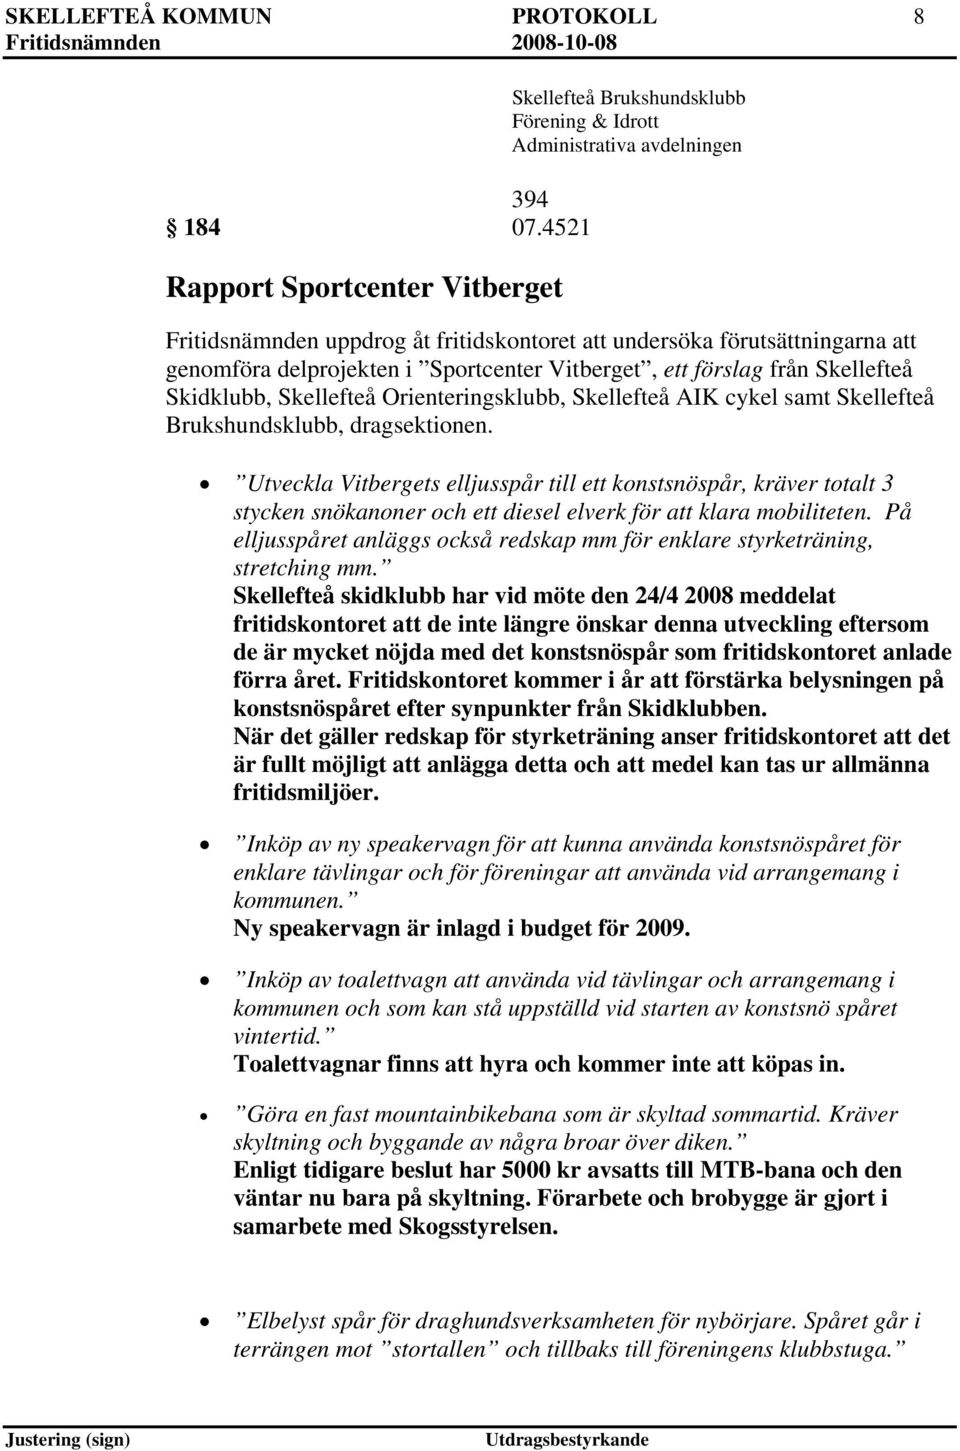 ett förslag från Skellefteå Skidklubb, Skellefteå Orienteringsklubb, Skellefteå AIK cykel samt Skellefteå Brukshundsklubb, dragsektionen.